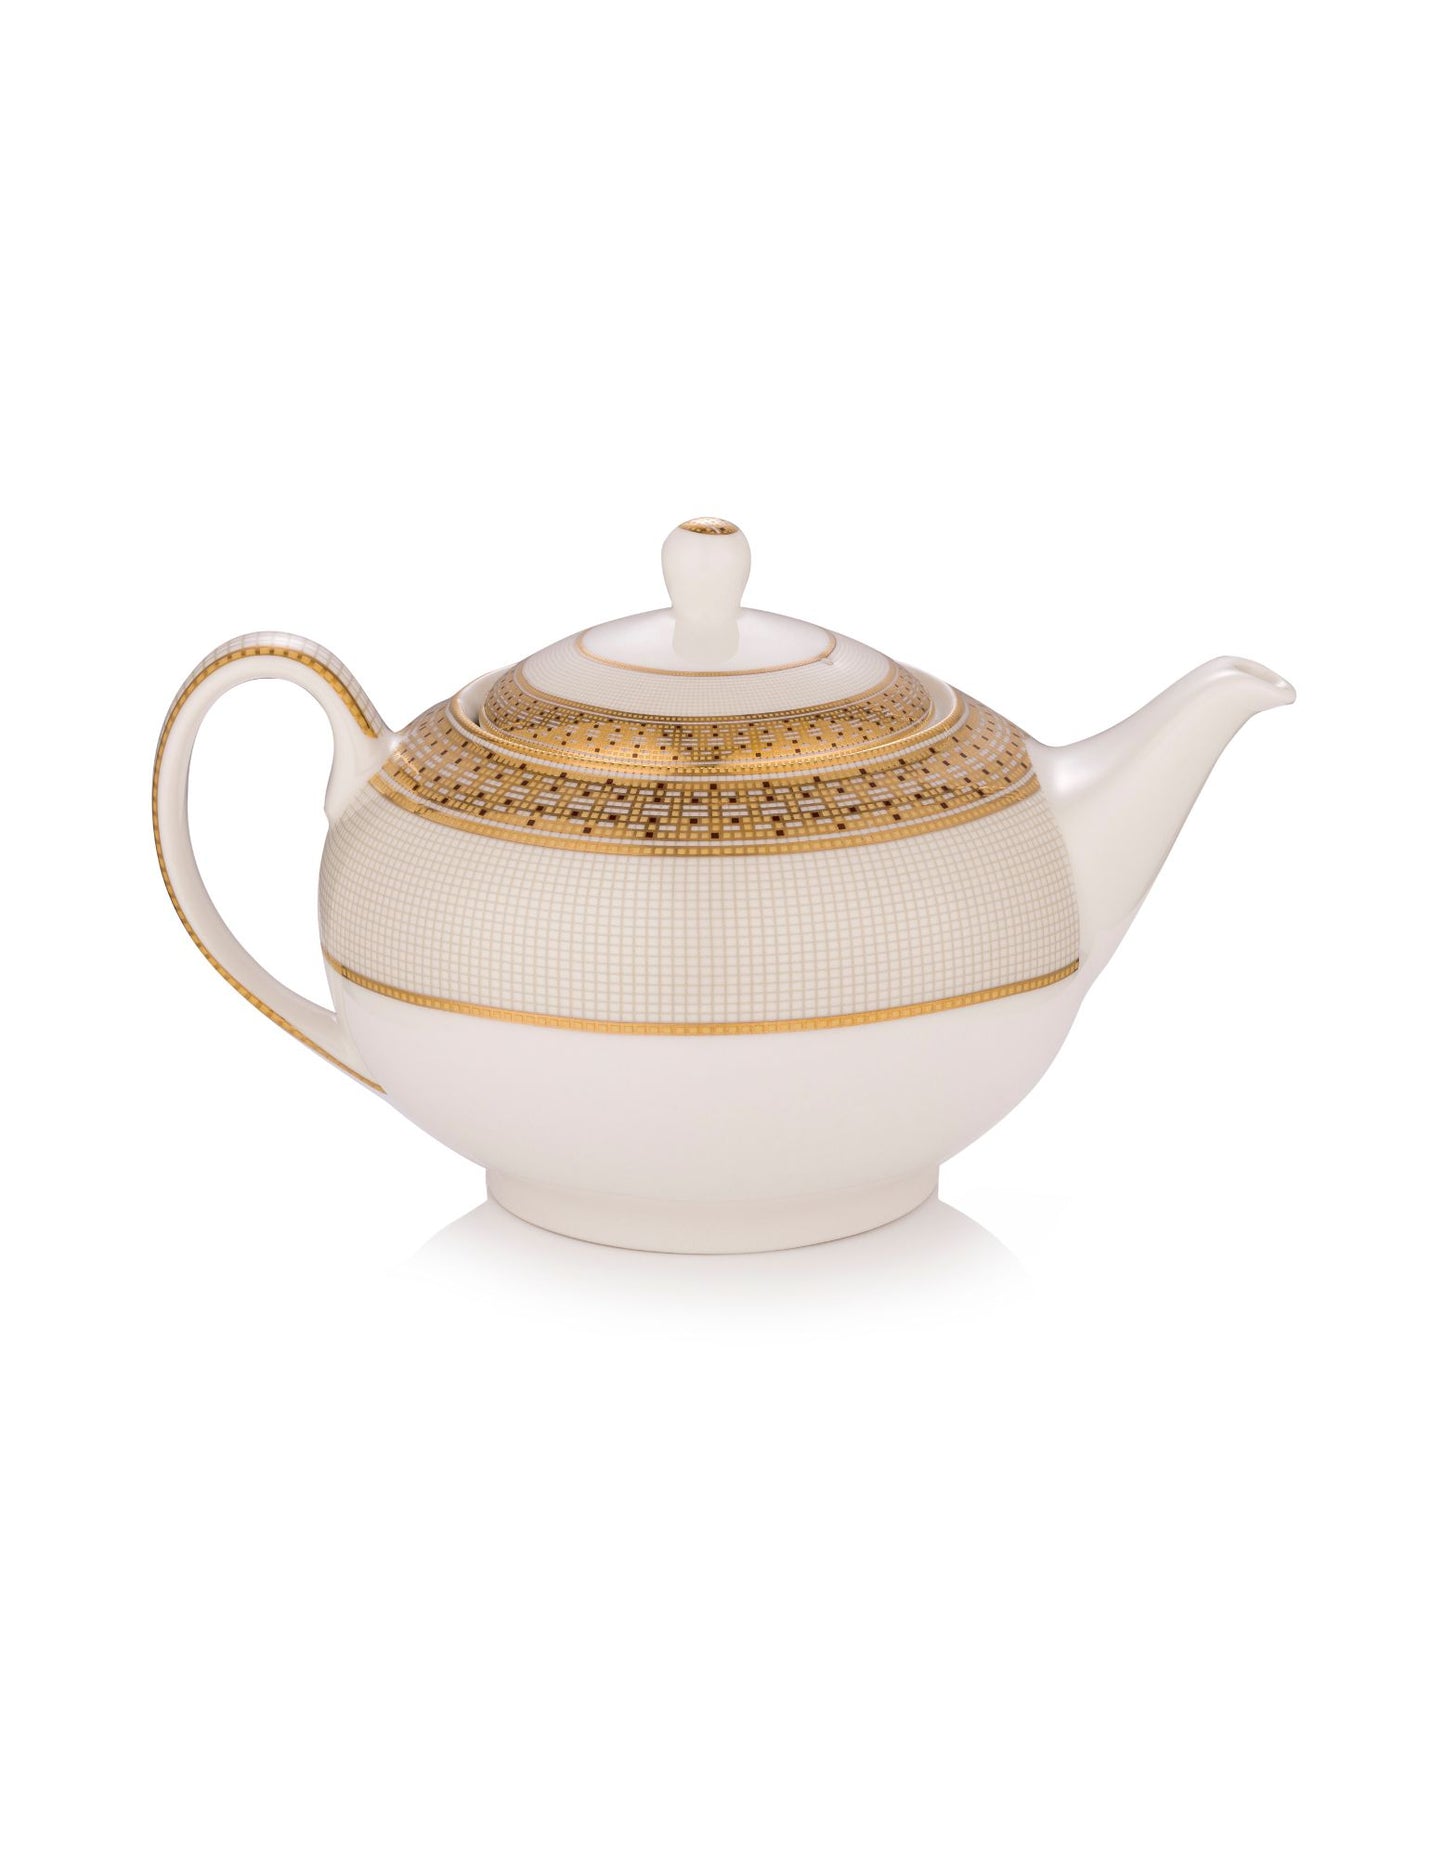 Dru collection - Teapot